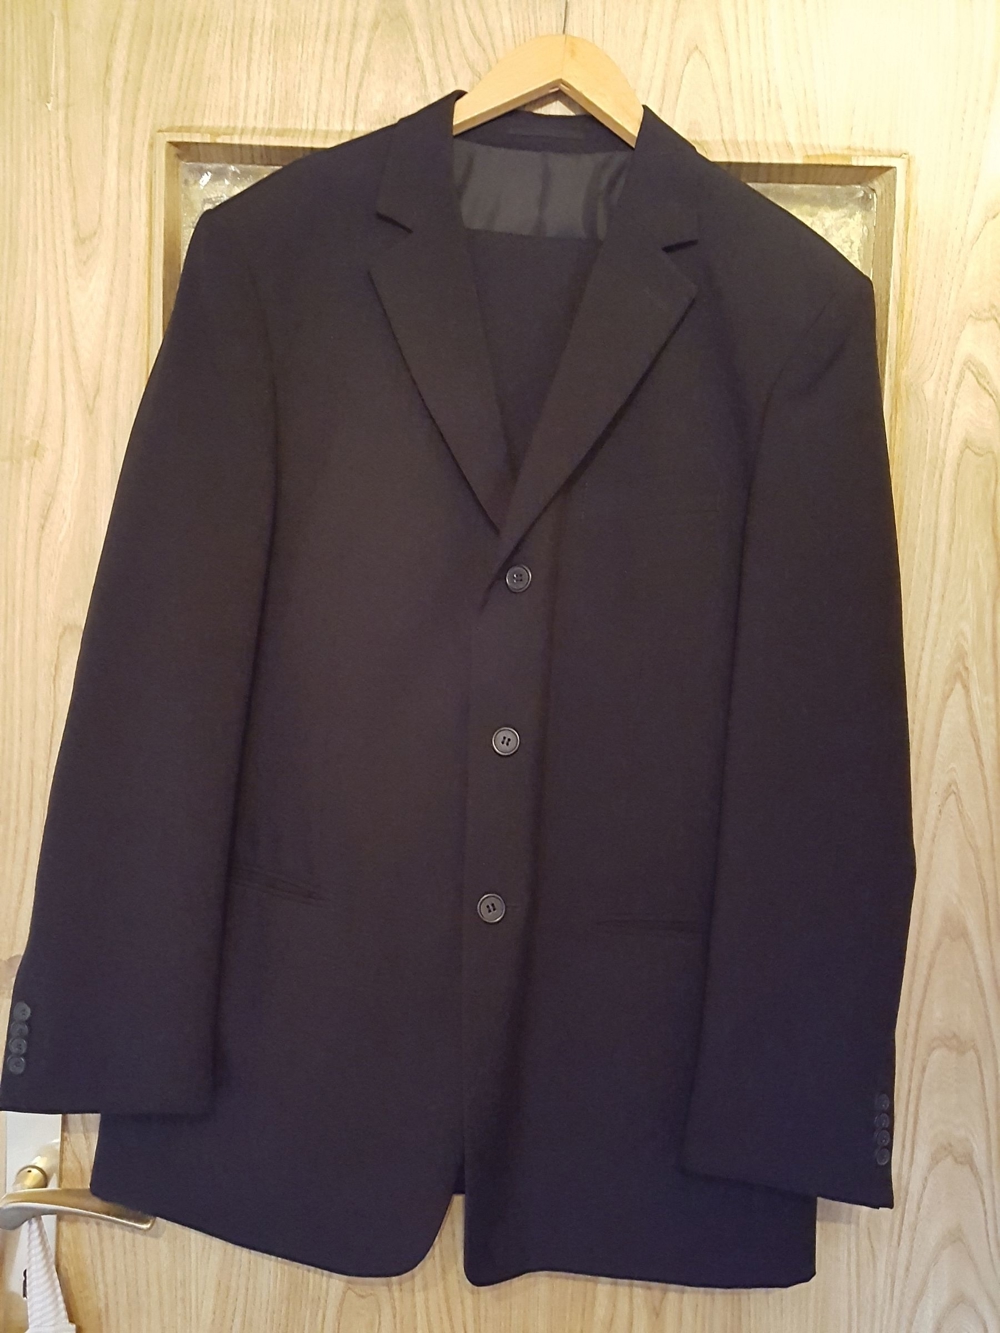 Schwarzer Herren-Anzug Größe 48